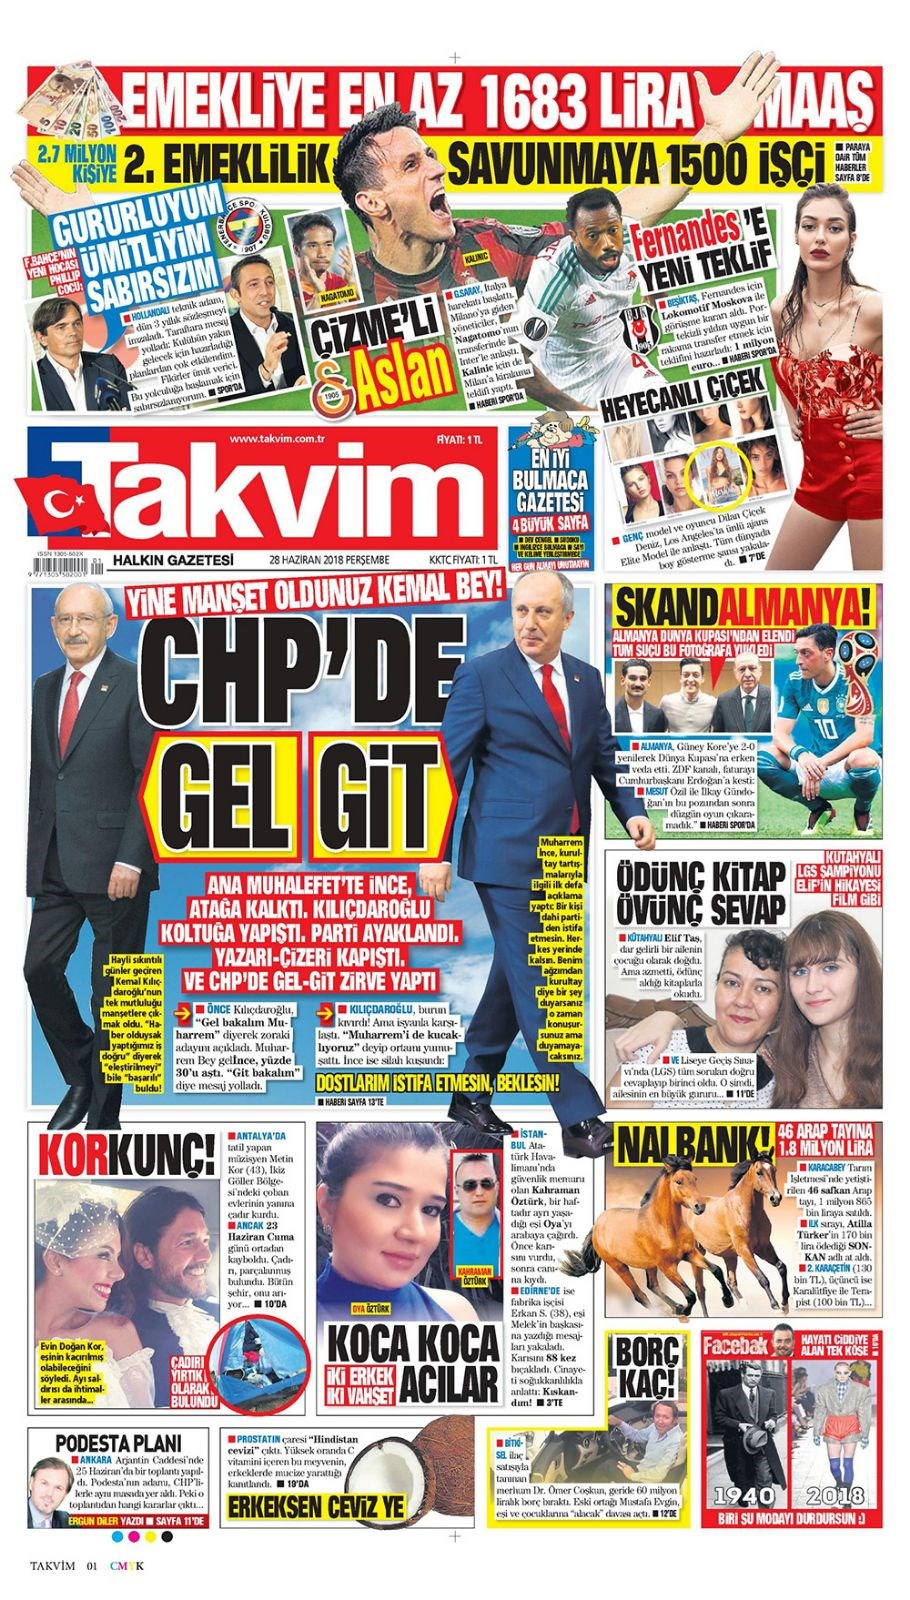 Gazete manşetleri 28 Haziran 2018 Hürriyet - Sözcü - Habertürk